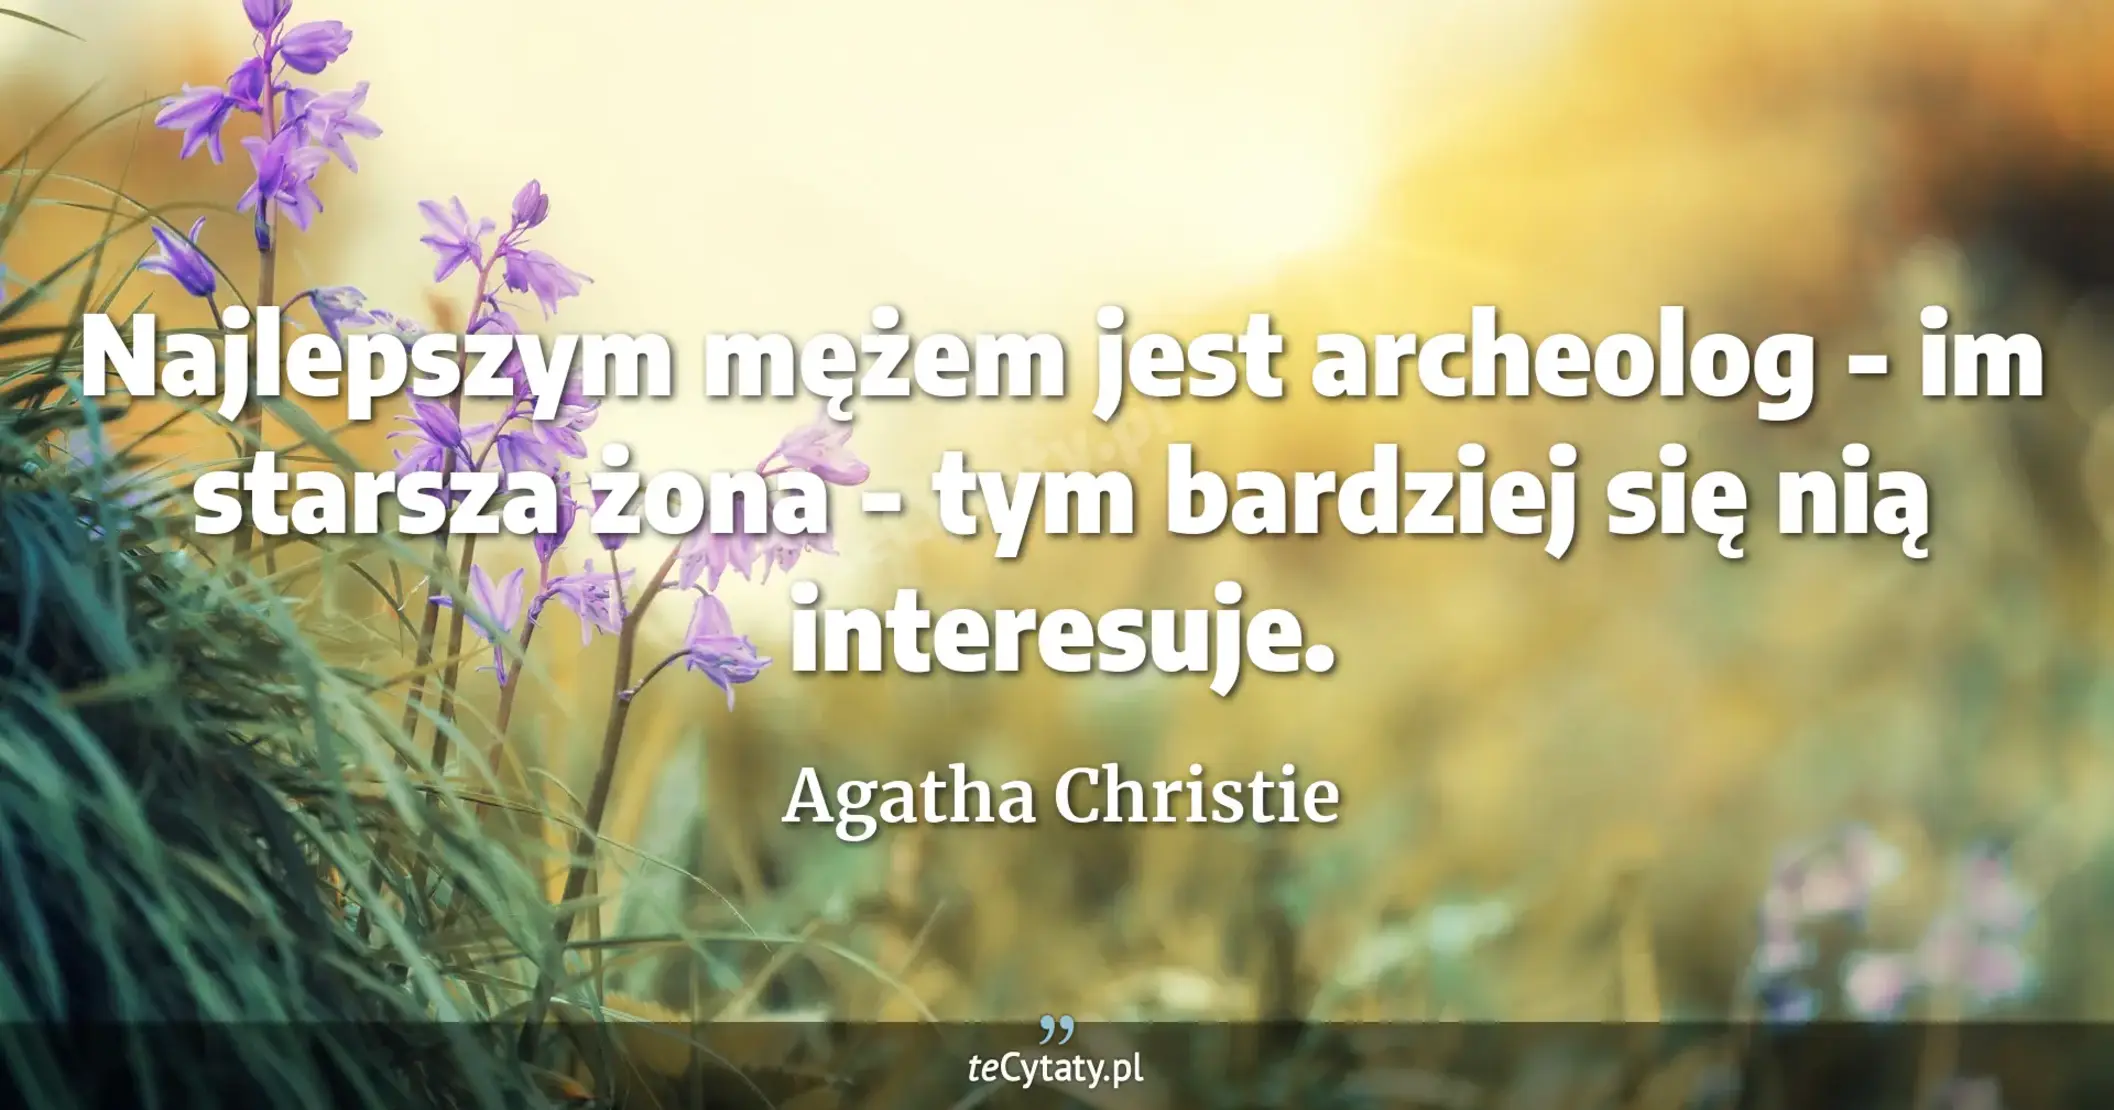 Najlepszym mężem jest archeolog - im starsza żona - tym bardziej się nią interesuje. - Agatha Christie